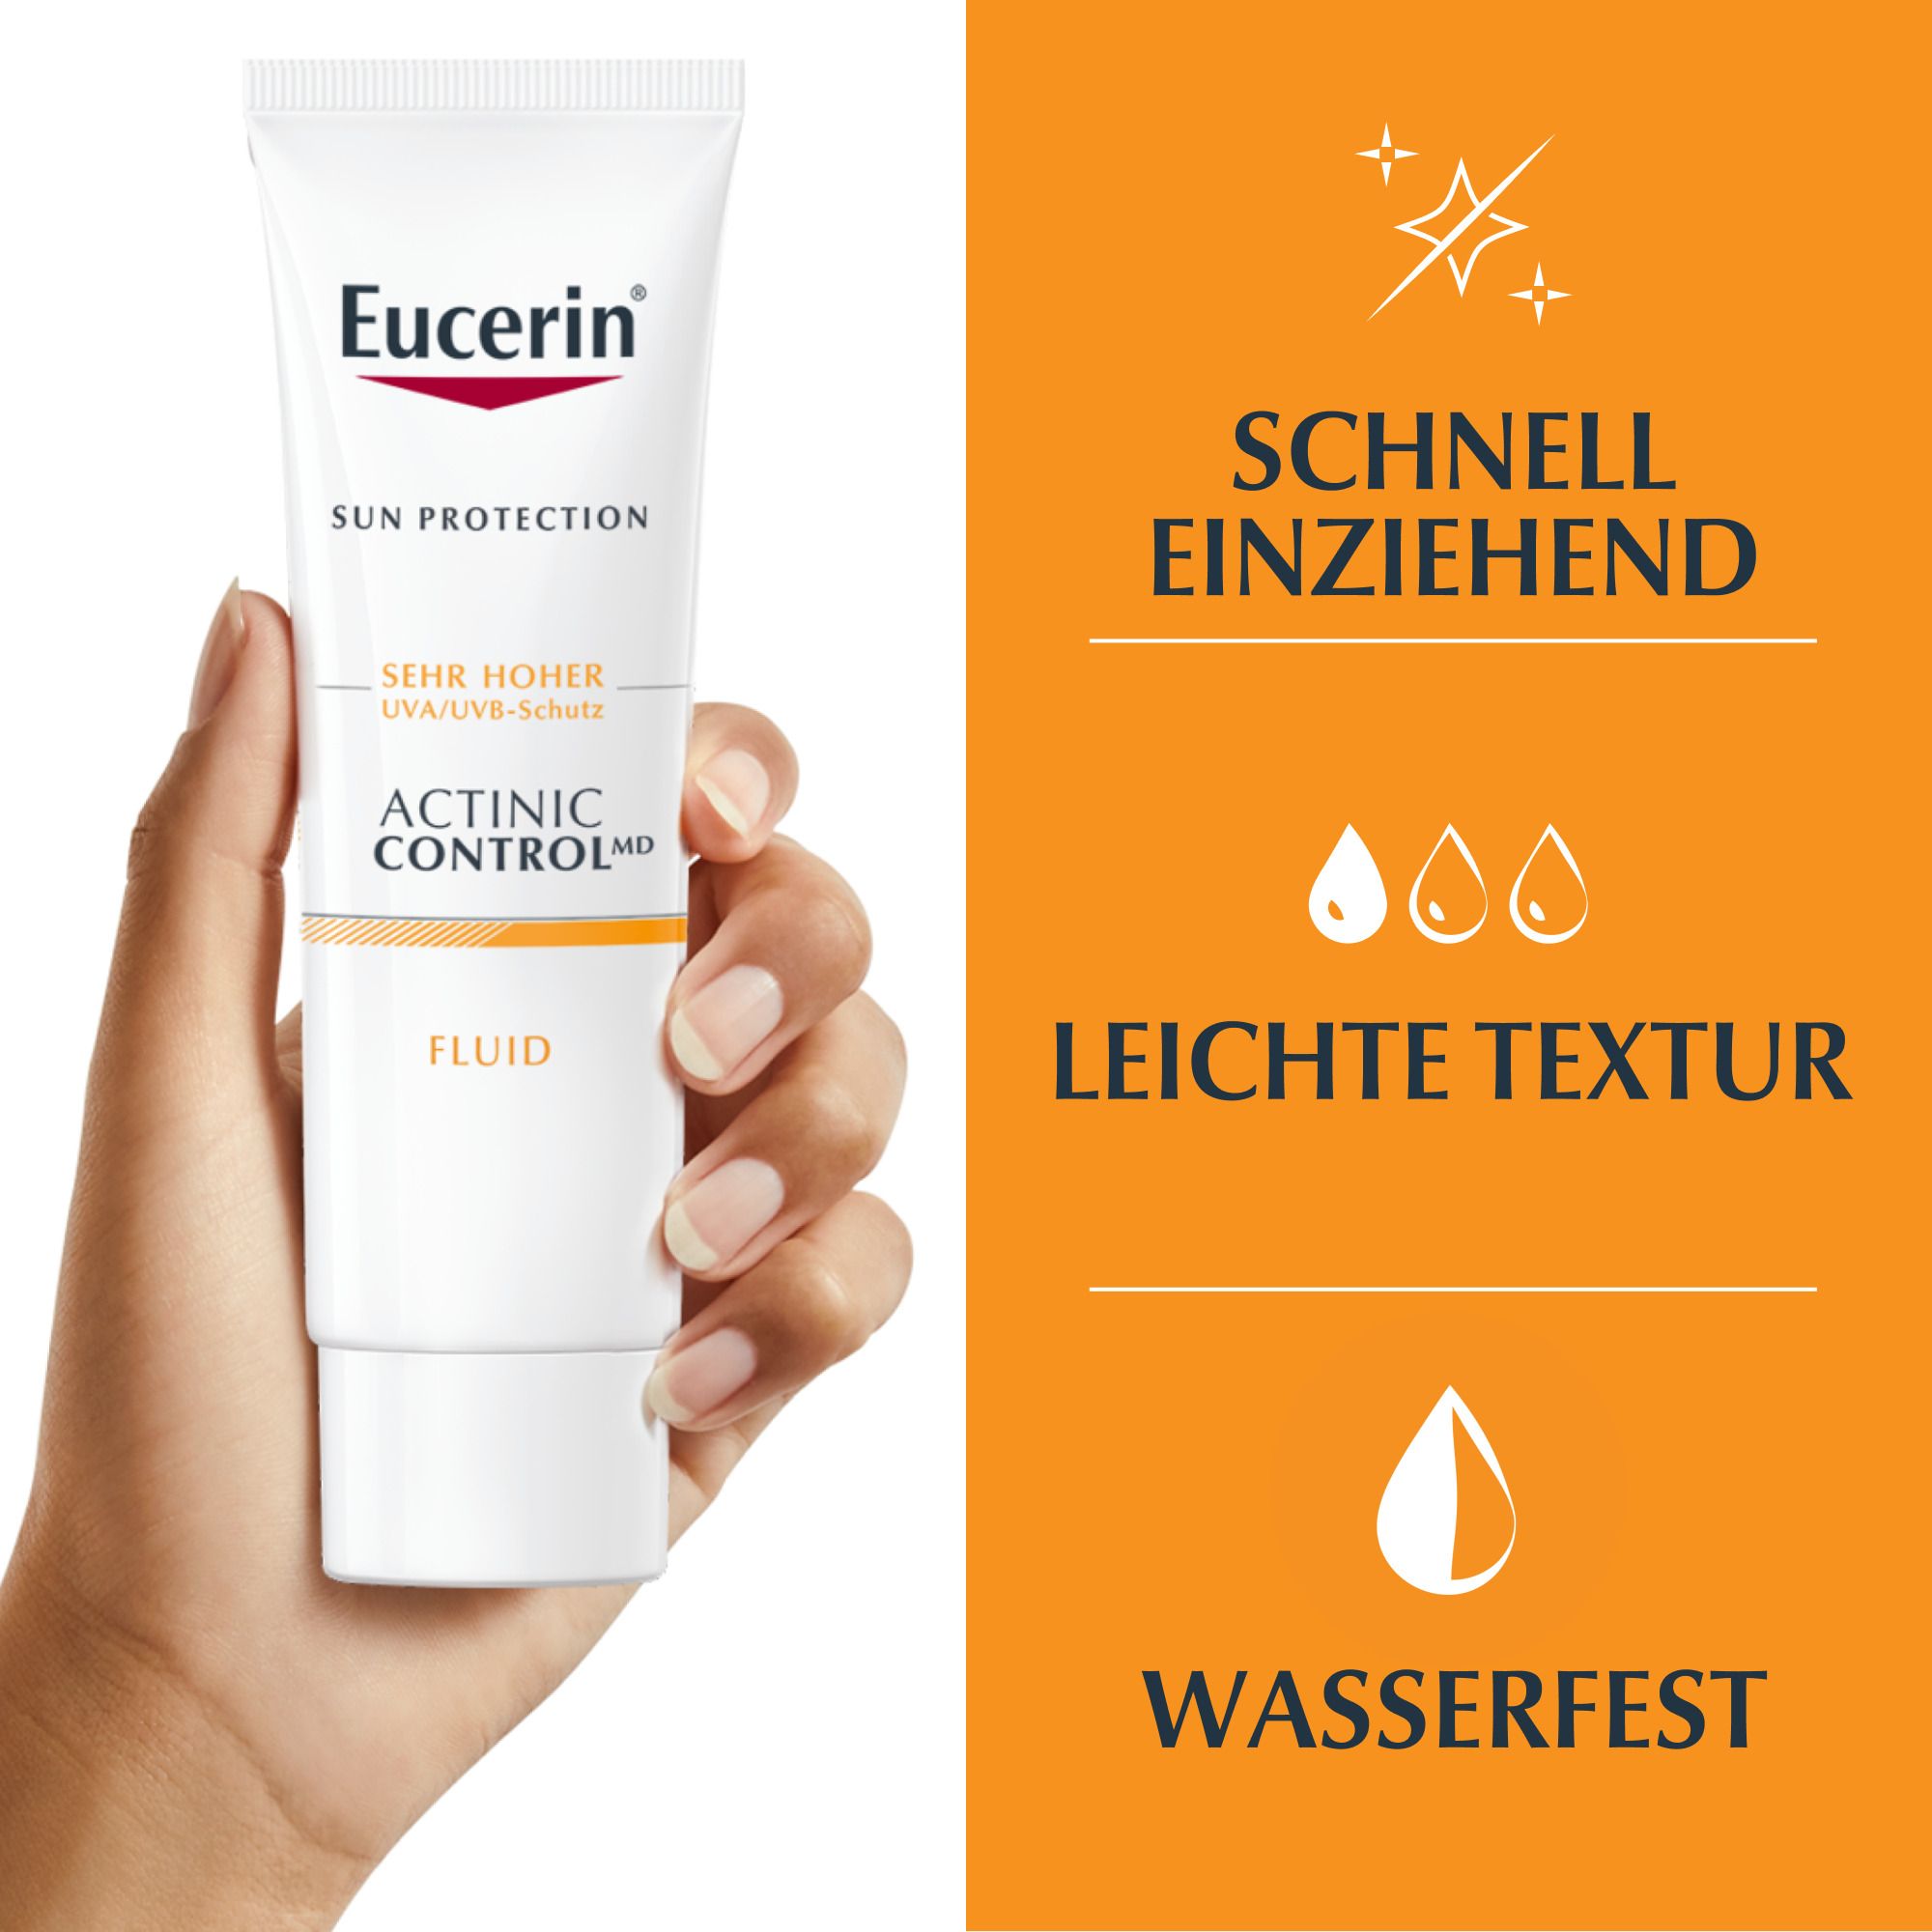 Eucerin® Sun Actinic Control MD – Zertifiziertes Medizinprodukt auch zur Prävention von aktinischer Keratose und hellem Hautkrebs